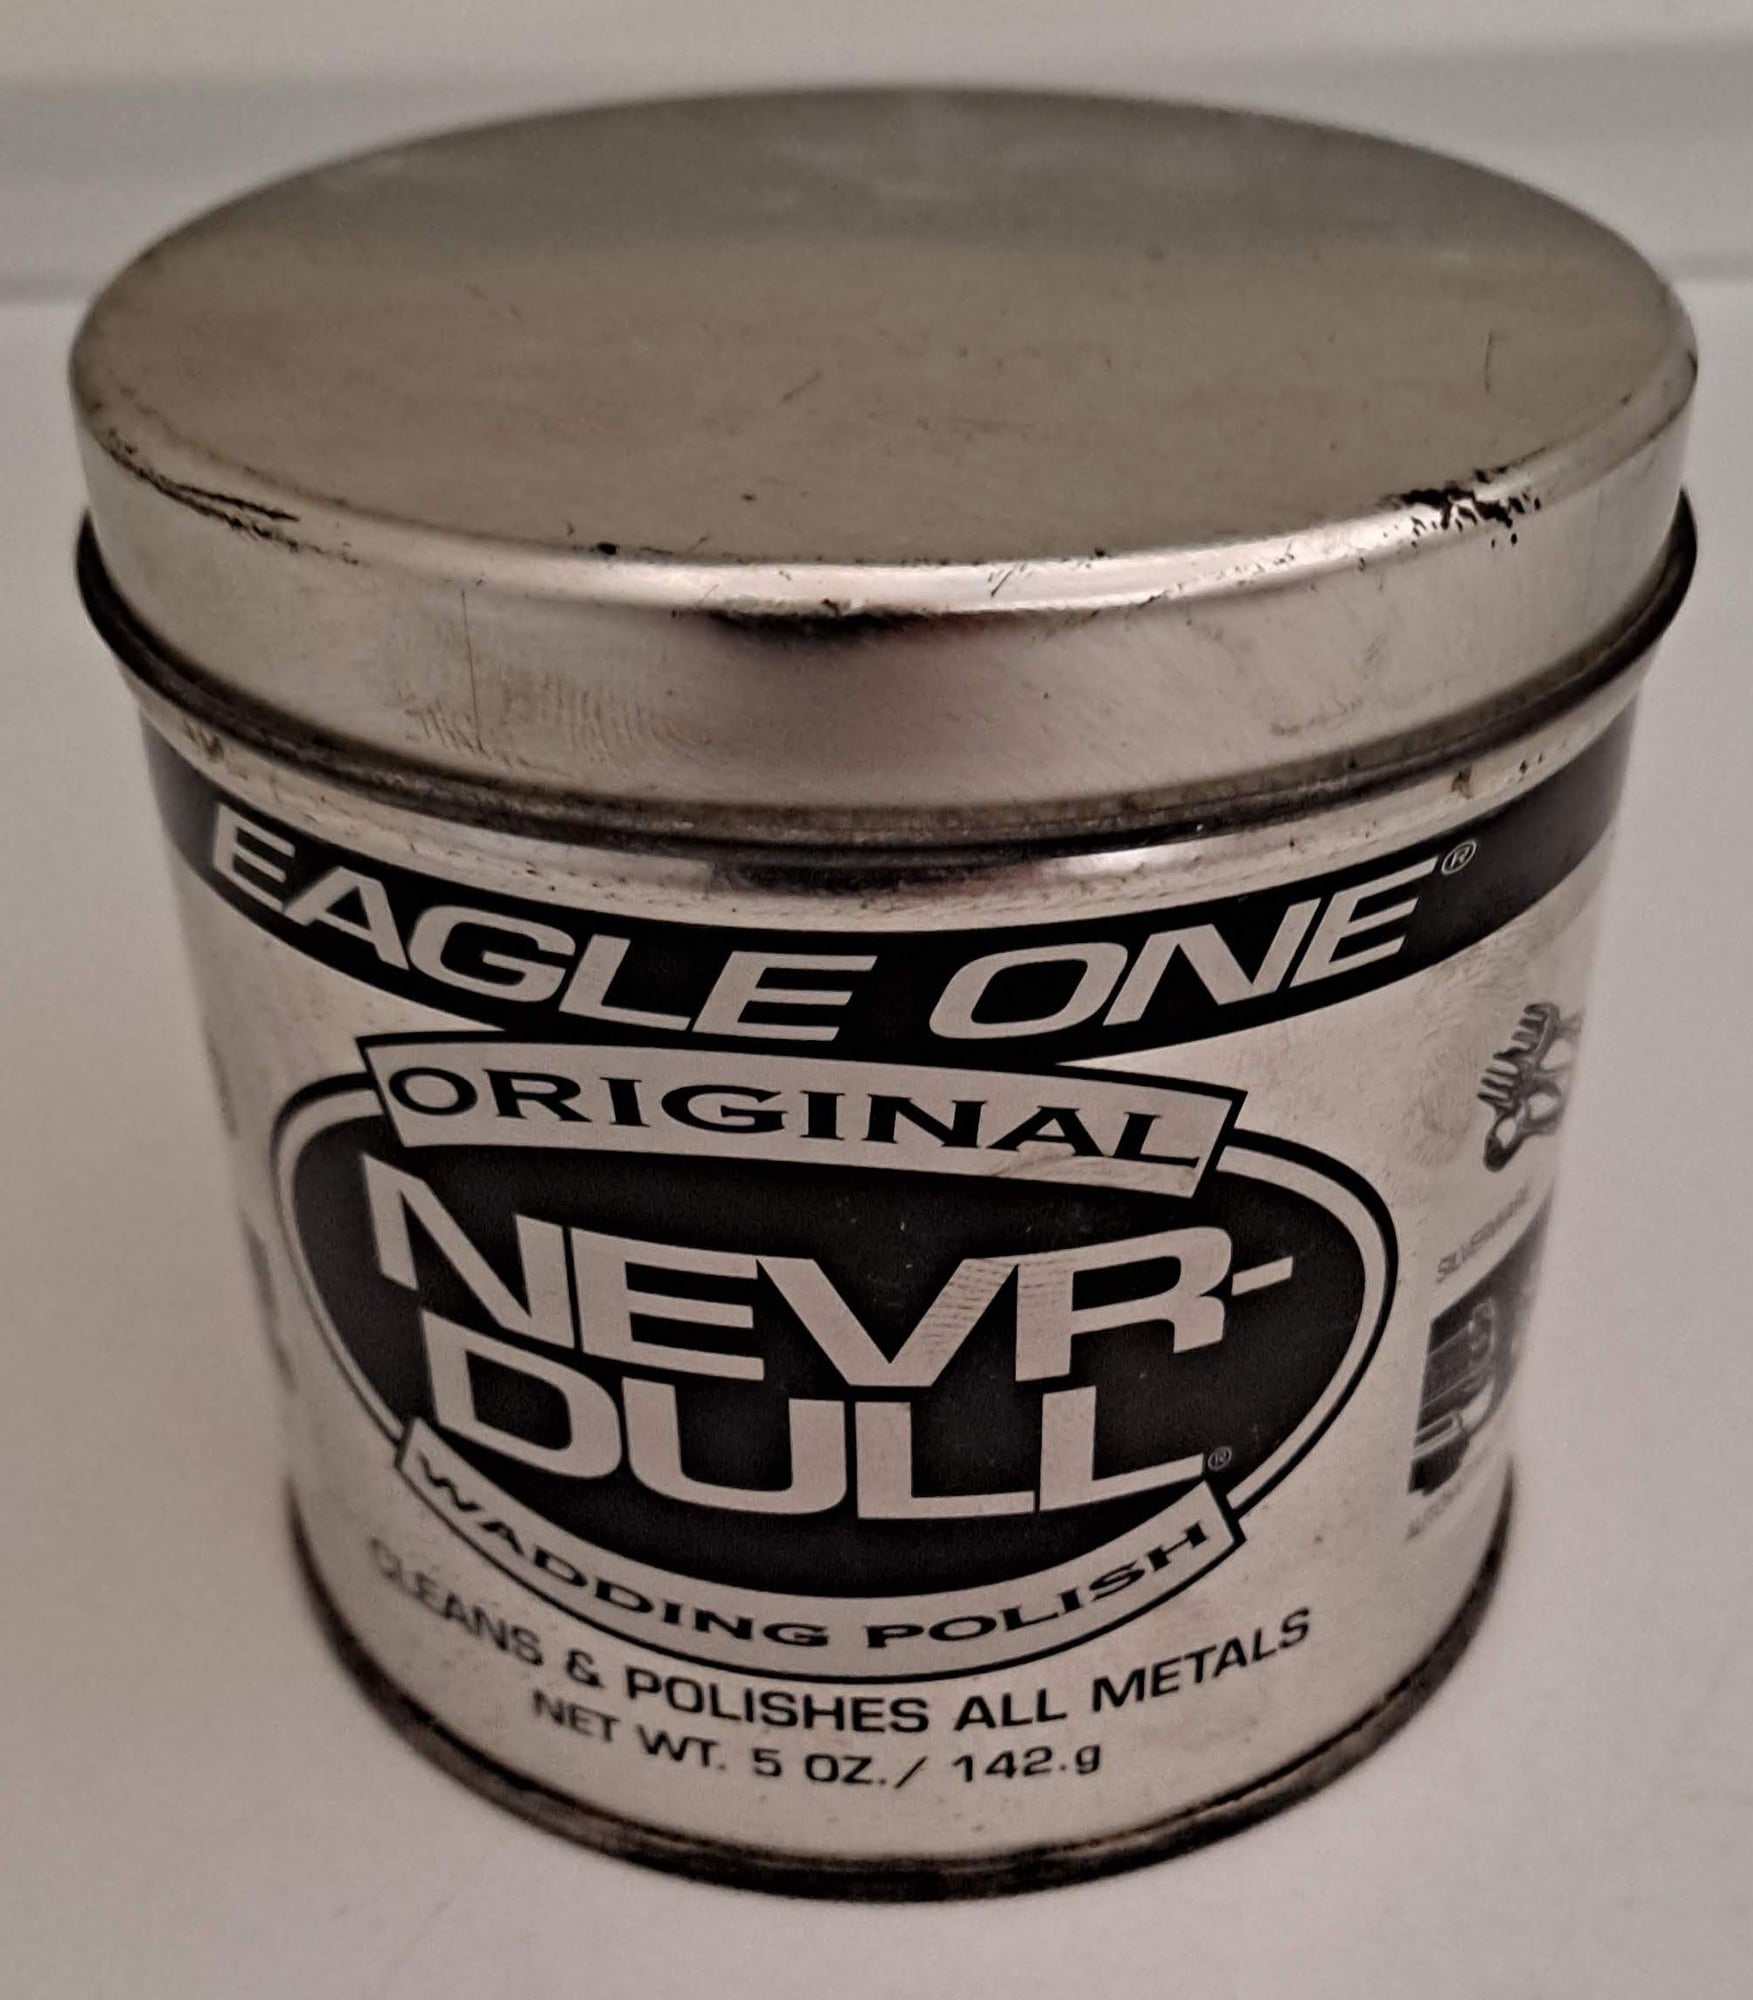 Eagle One Original Nevr-Dull Wadding Polish - 5 oz